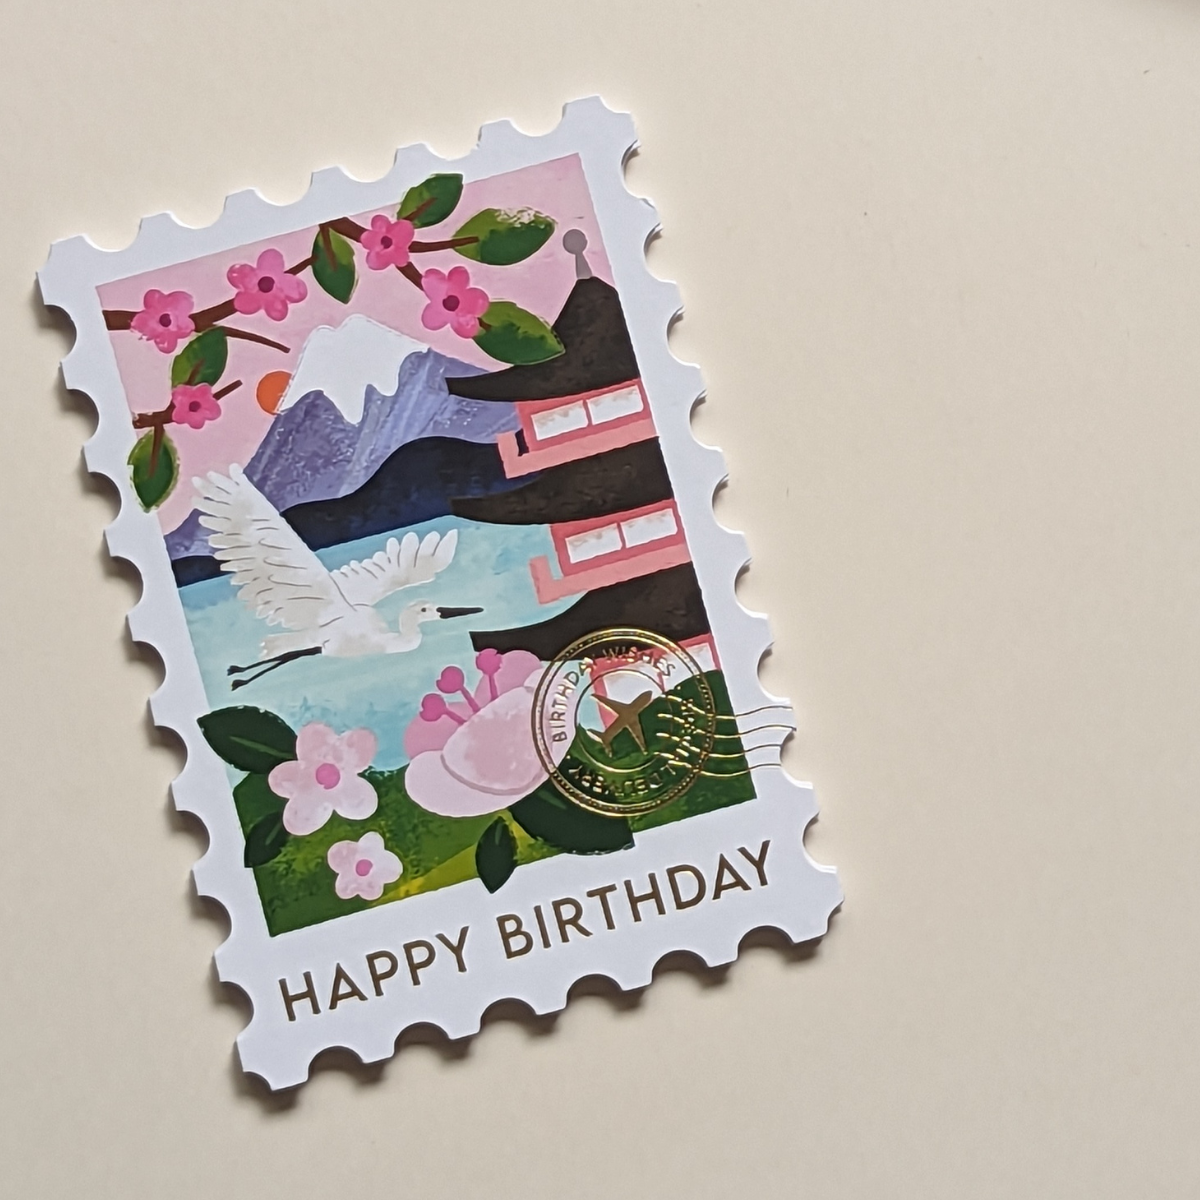 Cette carte en forme de timbre arbore une superbe illustration du Mont Fuji. Le cachet doré de la poste affiche les mots « Birthday Wishes », ce qui ajoute une touche d’authenticité.